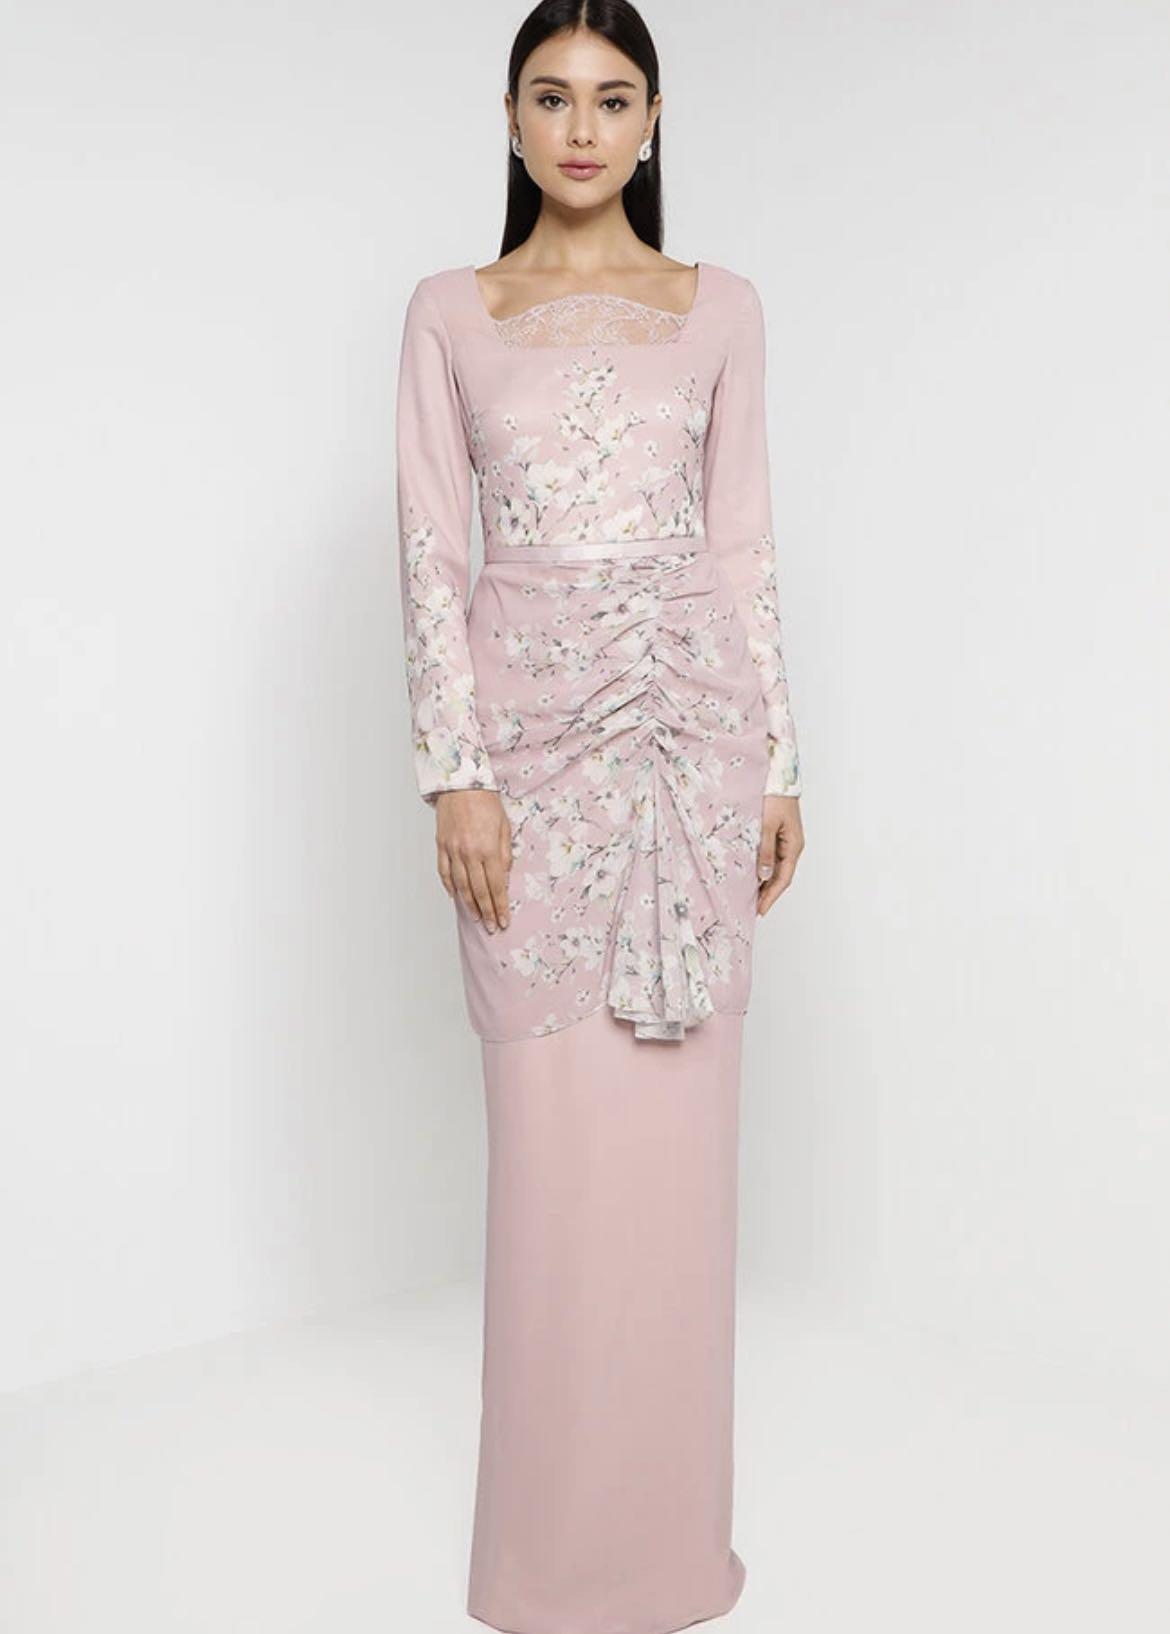 NH by Nurita Harith Dress (2022 Raya Collection), Women's Fashion ...